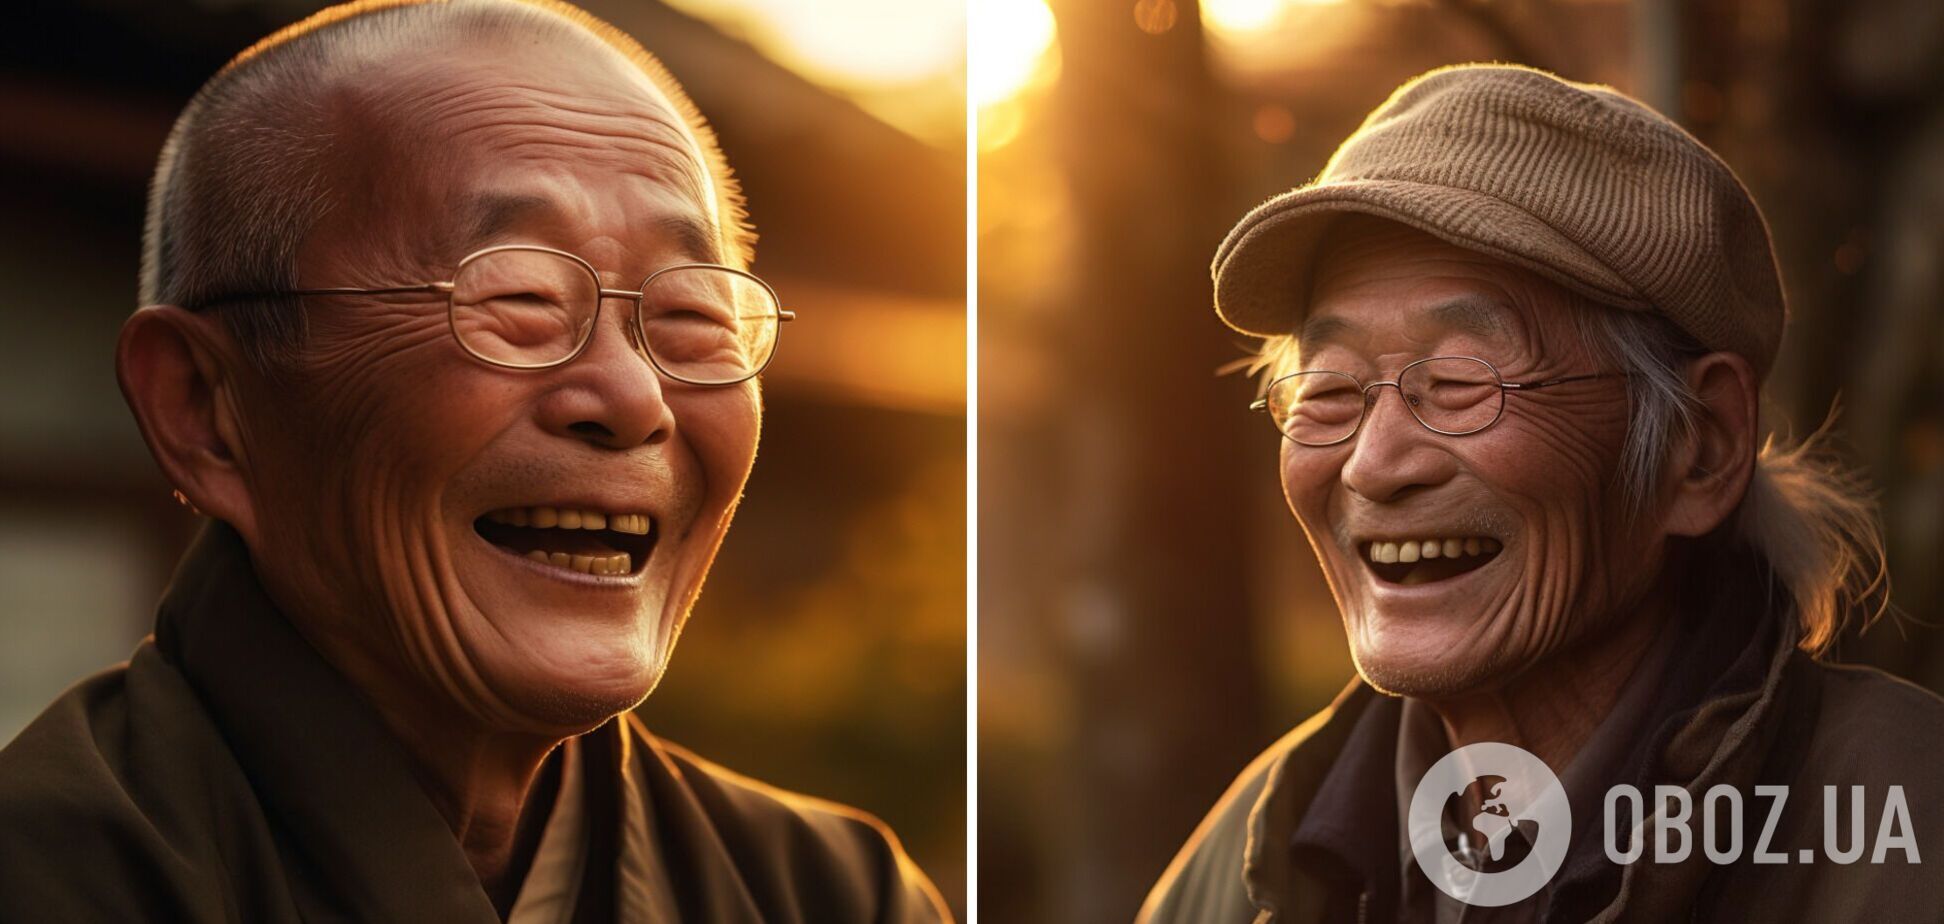 Почему в Японии много долгожителей и самые высокие зарплаты: история о чудесах, которые творит положительное мышление